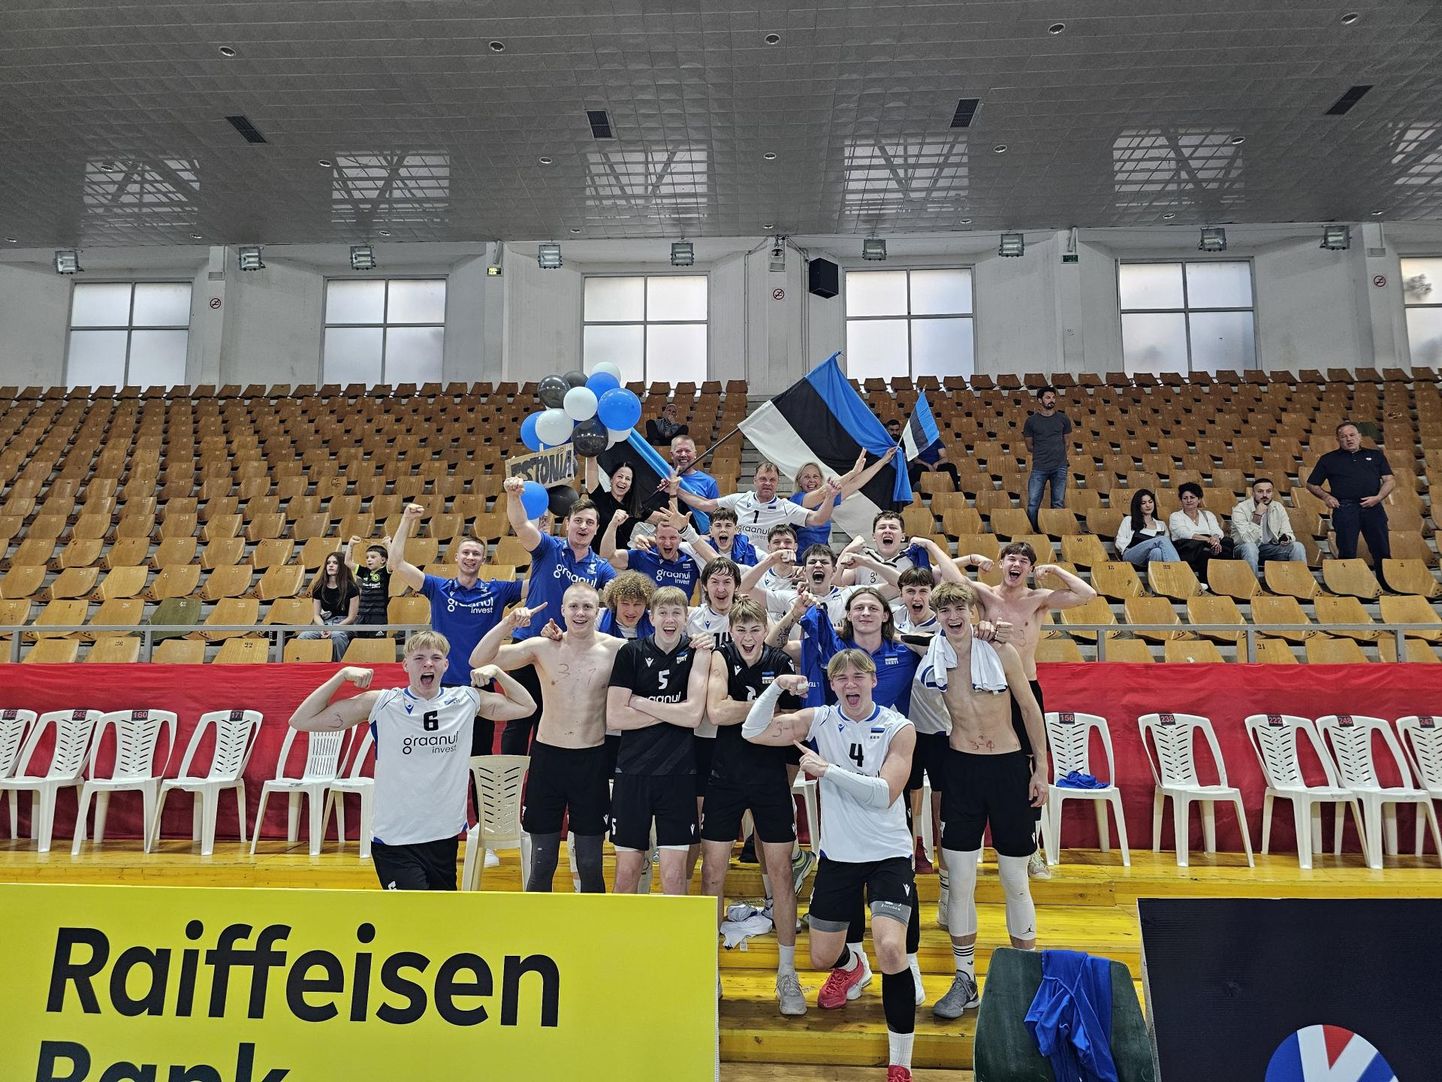 Viljandi võrkpallitreener ja U18 Eesti noormeeste koondise peatreener Tauno Lipp tüüris meeskonna teist korda Euroopa meistrivõistluste finaalturniirile.